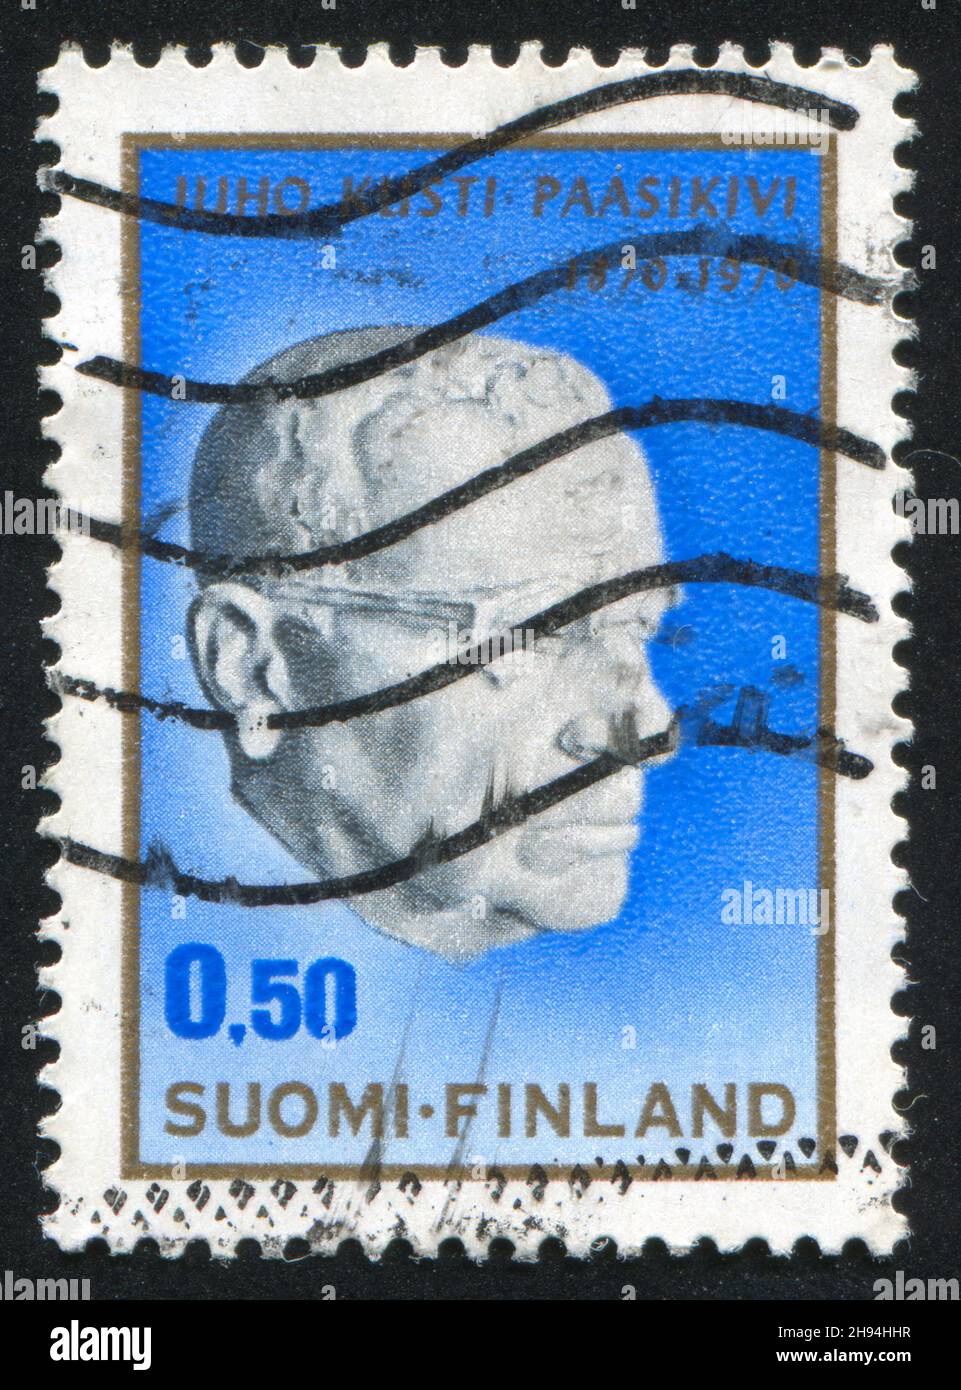 FINNLAND - UM 1970: Briefmarke gedruckt von Finnland, zeigt Präsident Paasikivi, von Essi Renavall, um 1970 Stockfoto